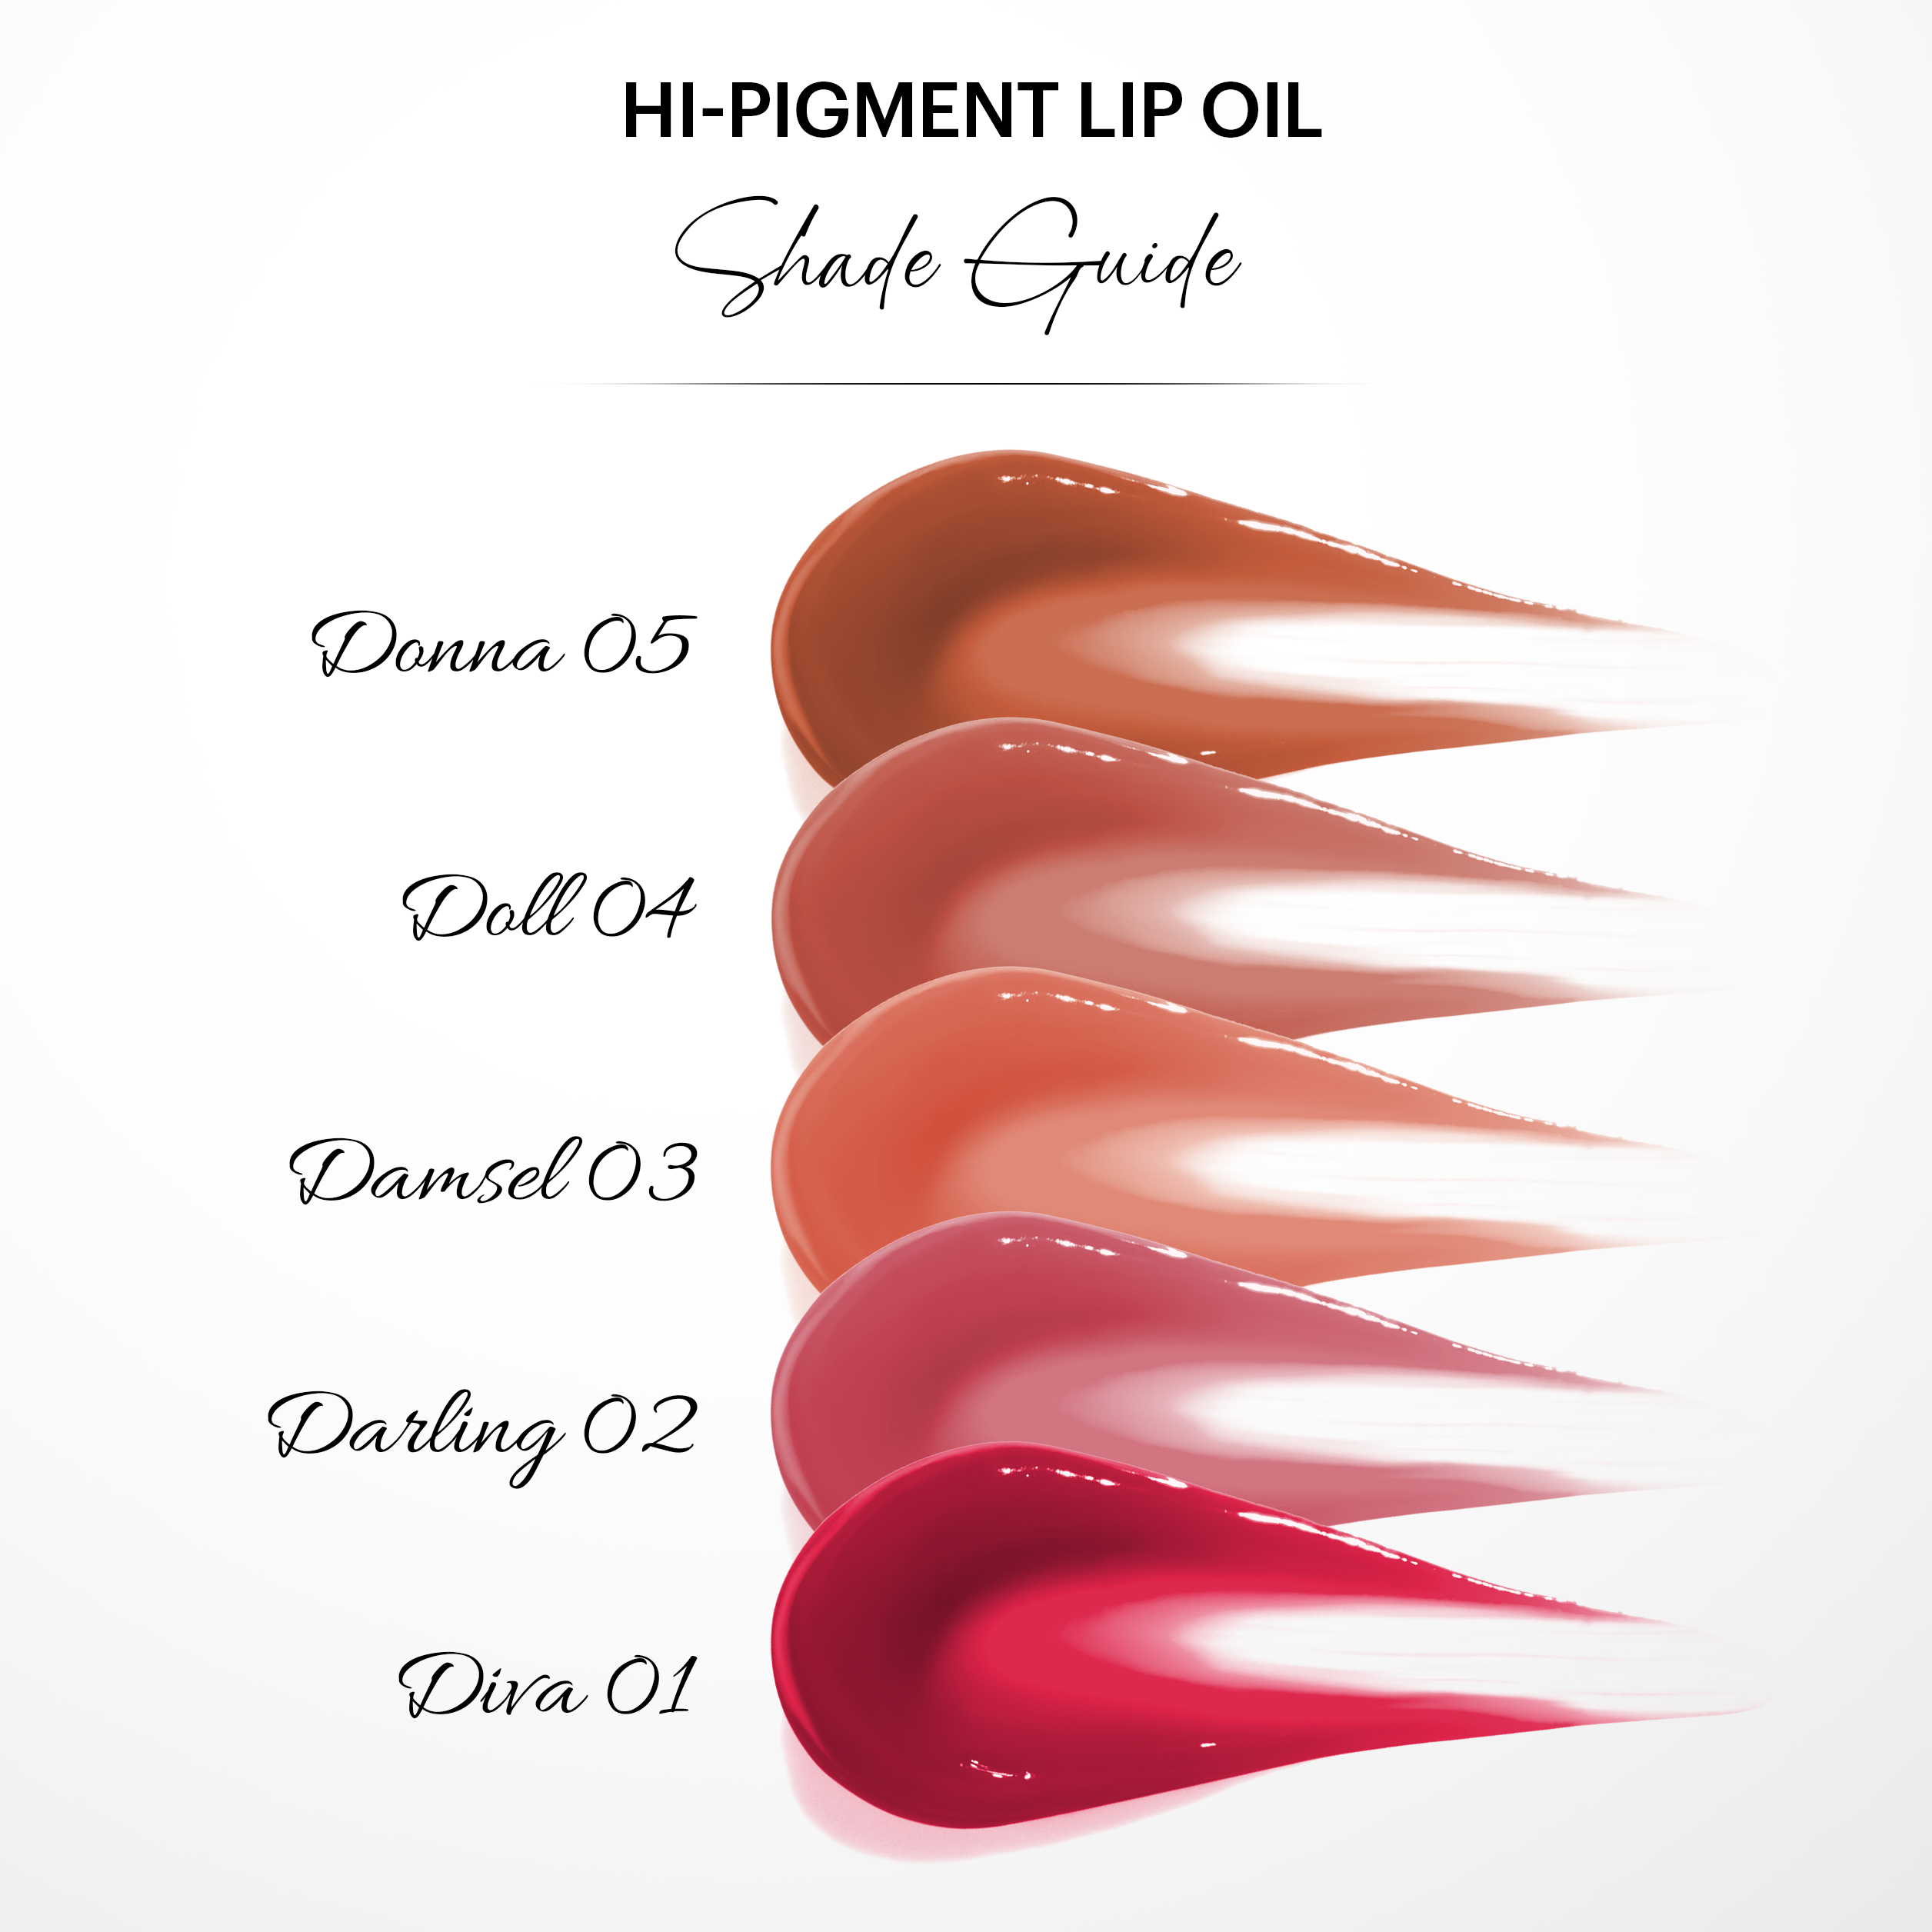 Hi-Pigment Lip Oil: Diva 01